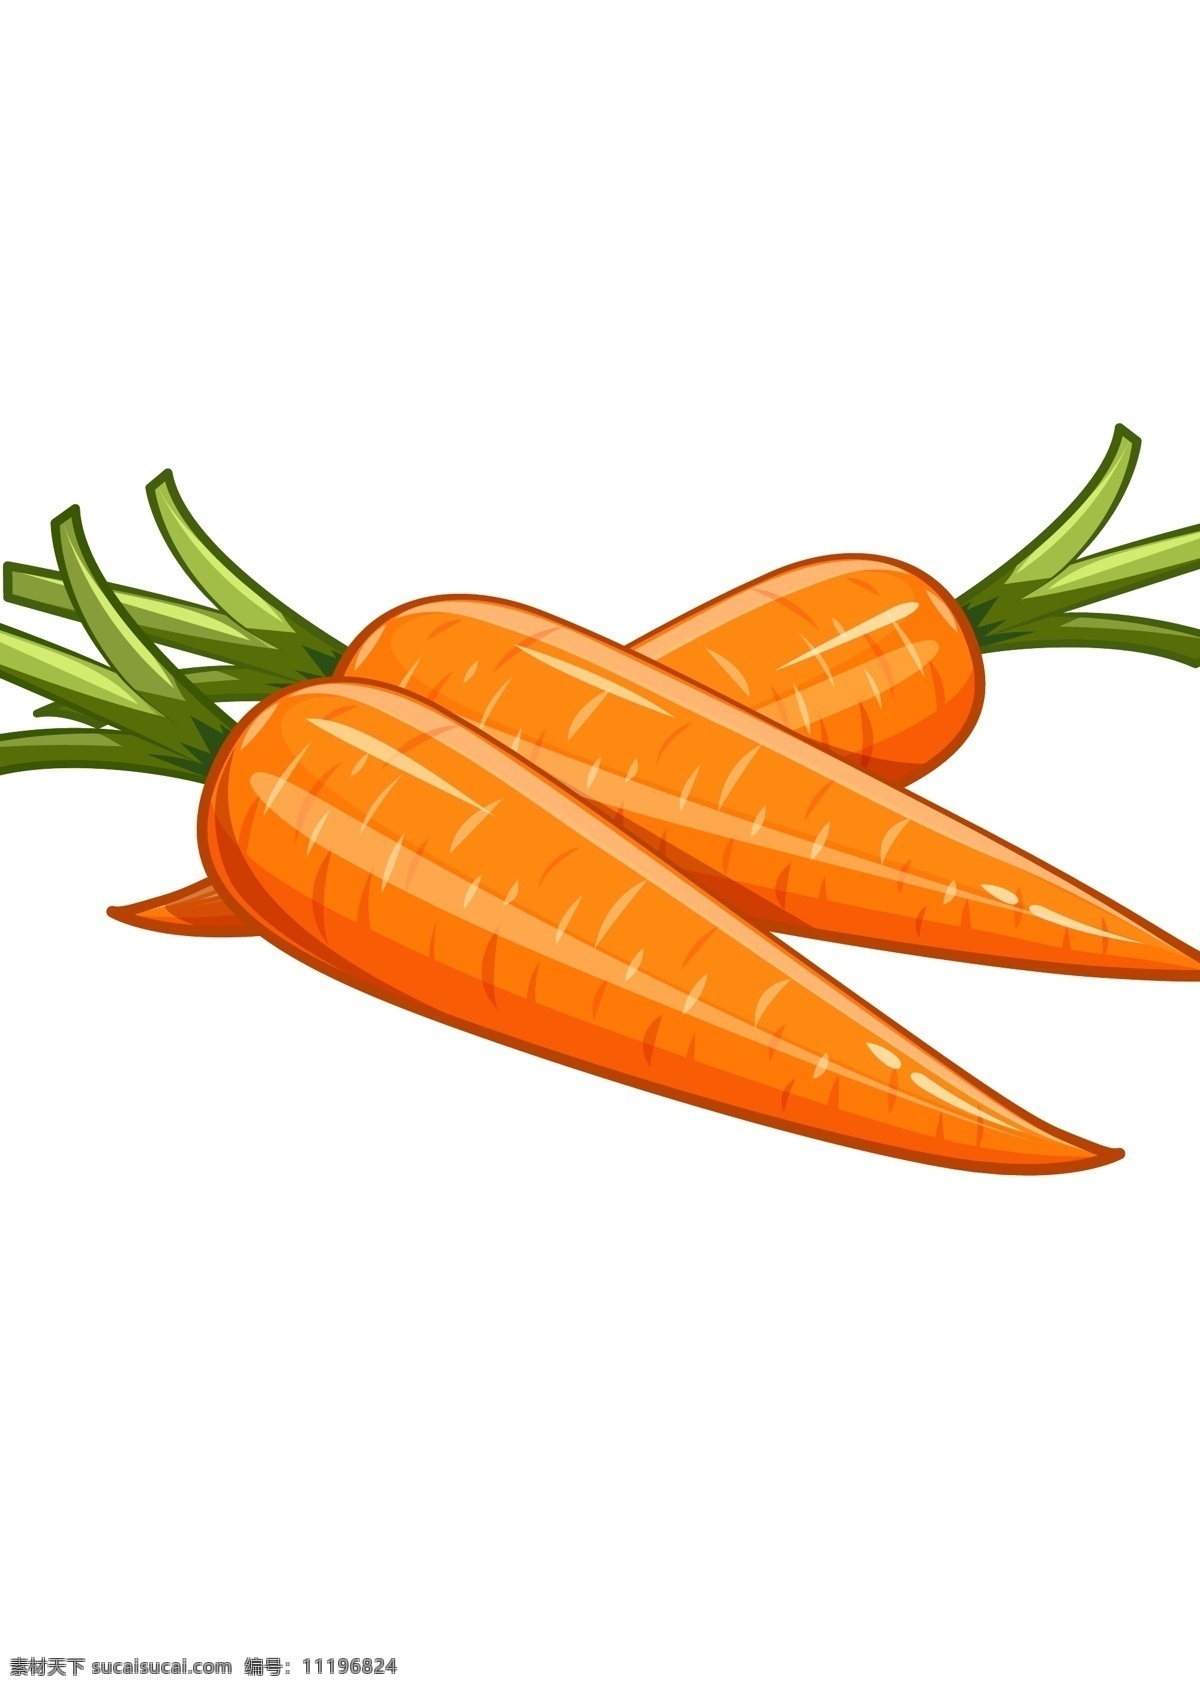 手绘 矢量 胡萝卜 手绘胡萝卜 矢量胡萝卜 水果素材 橙萝卜 胡萝卜漫画 水果蔬菜